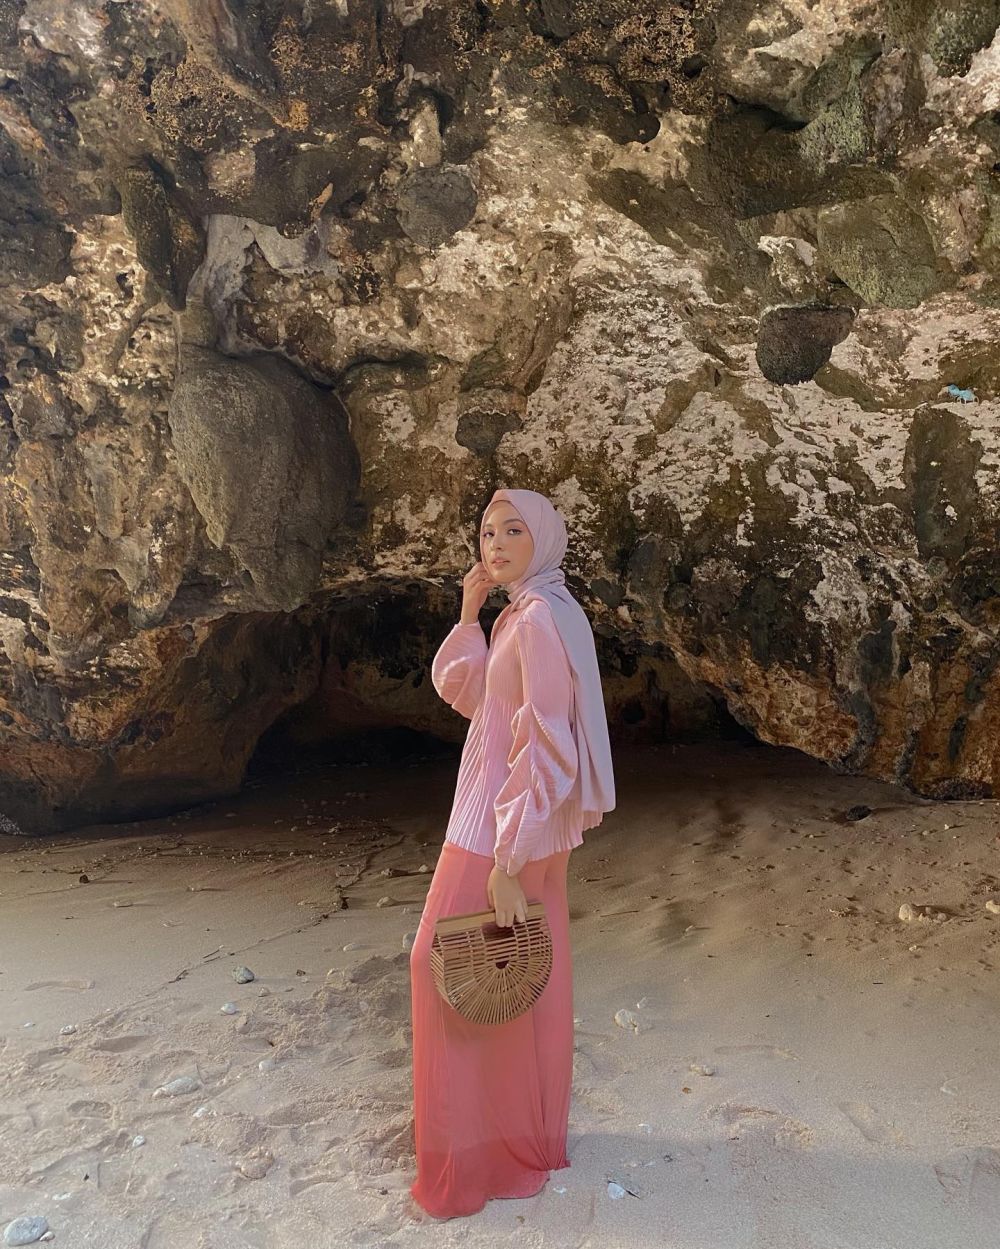 13 Padu Padan Outfit Hijab ala Bella Attamimi, Cheerful!